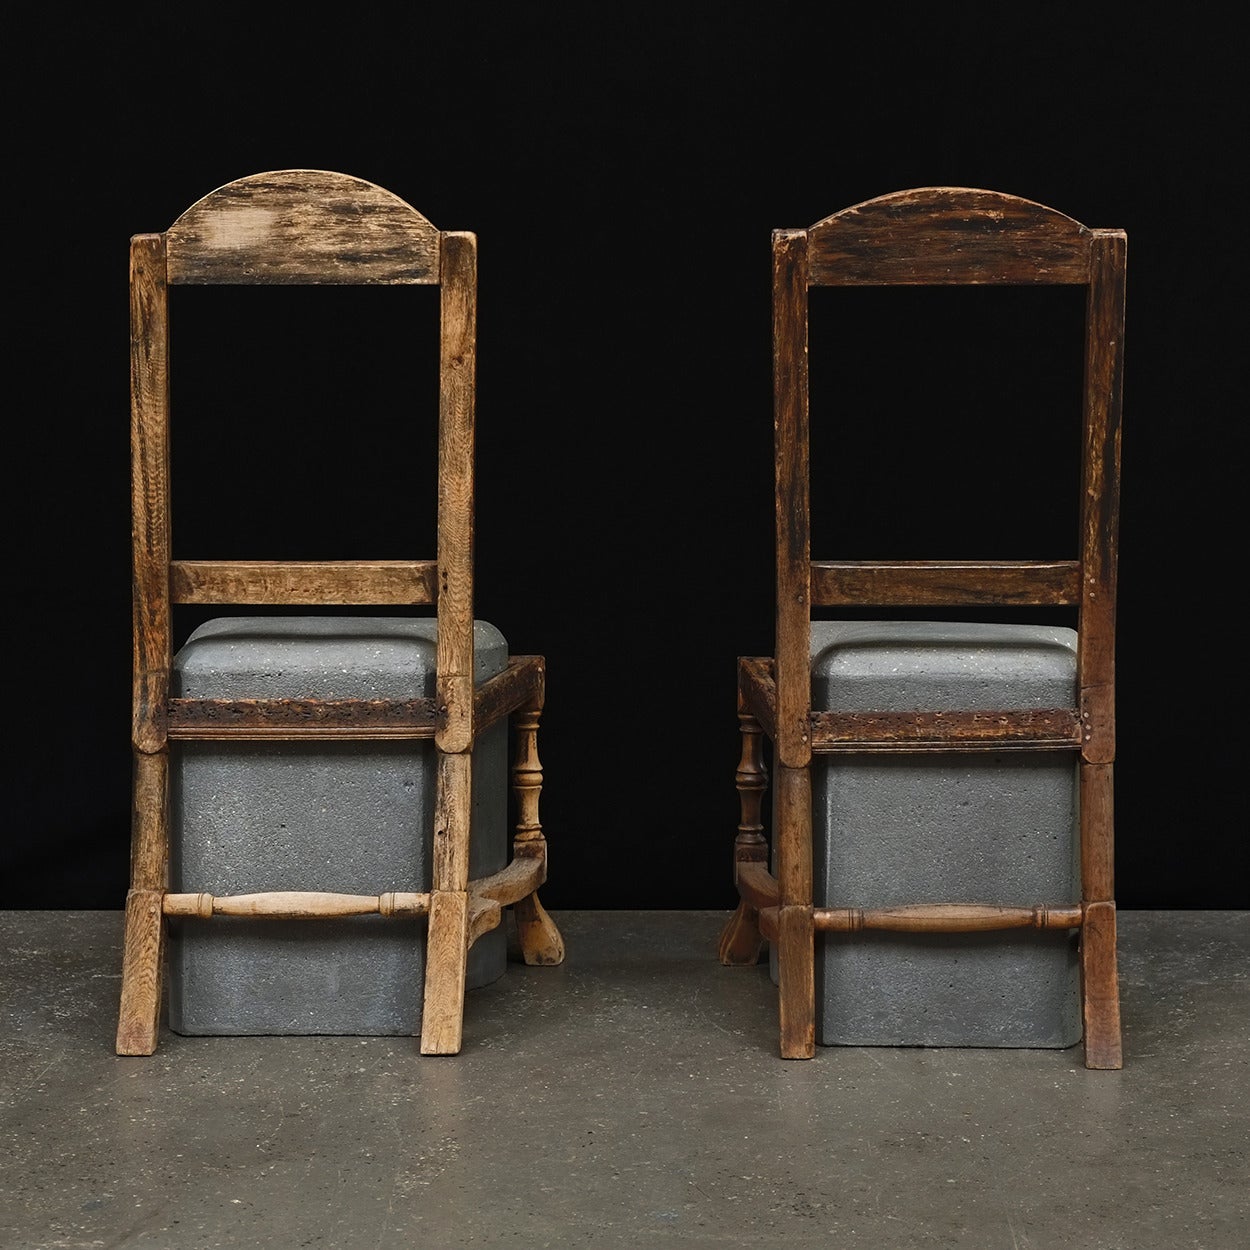 2012
Antique chair frames, cast concrete seats.